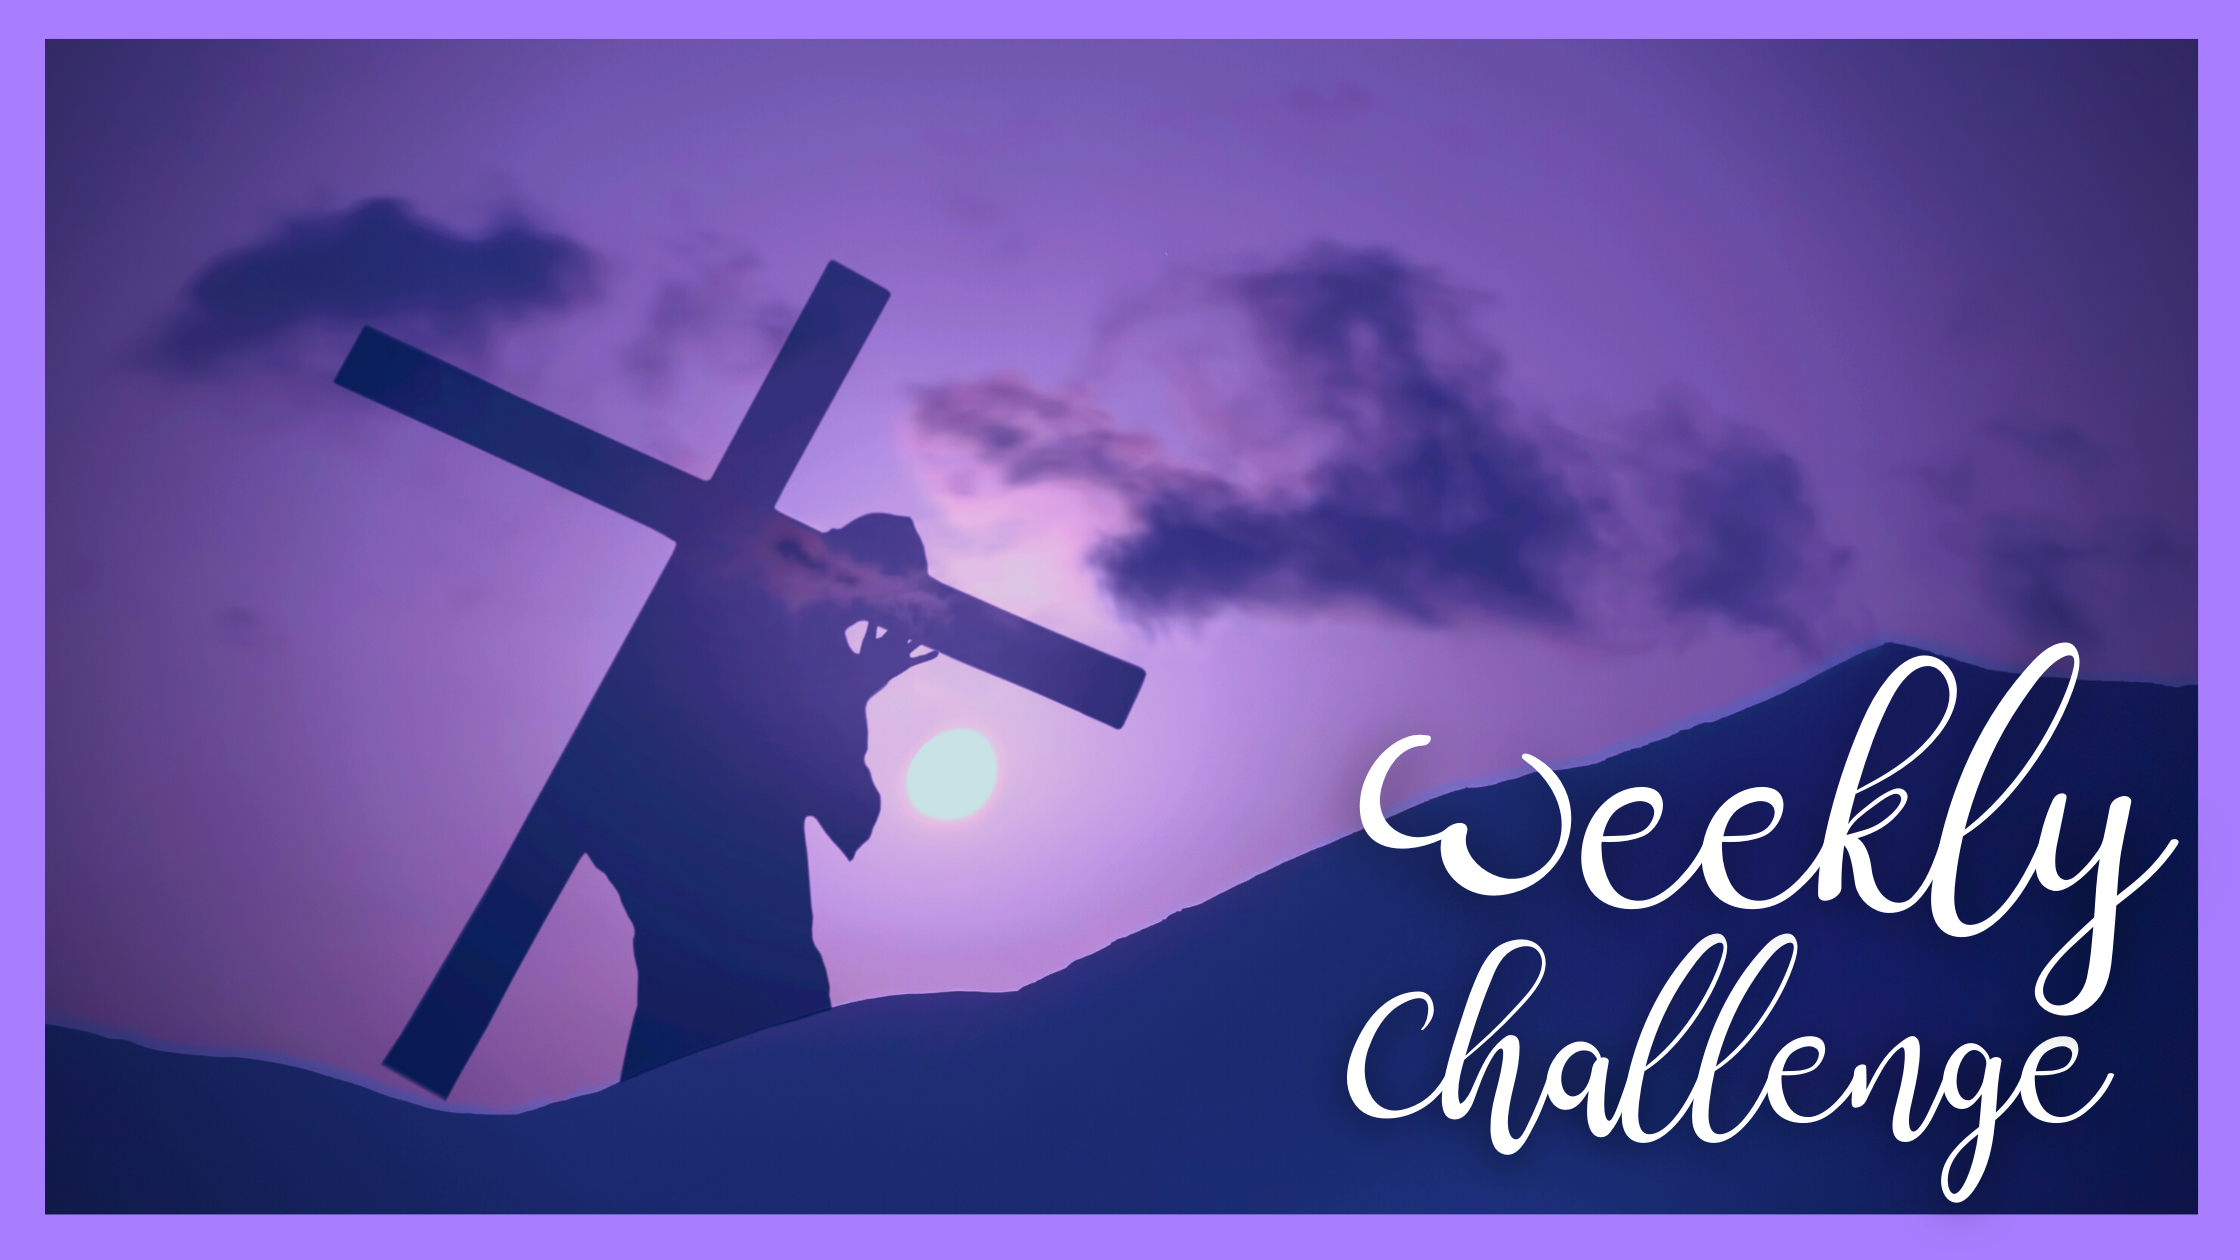 Weekly Challenge